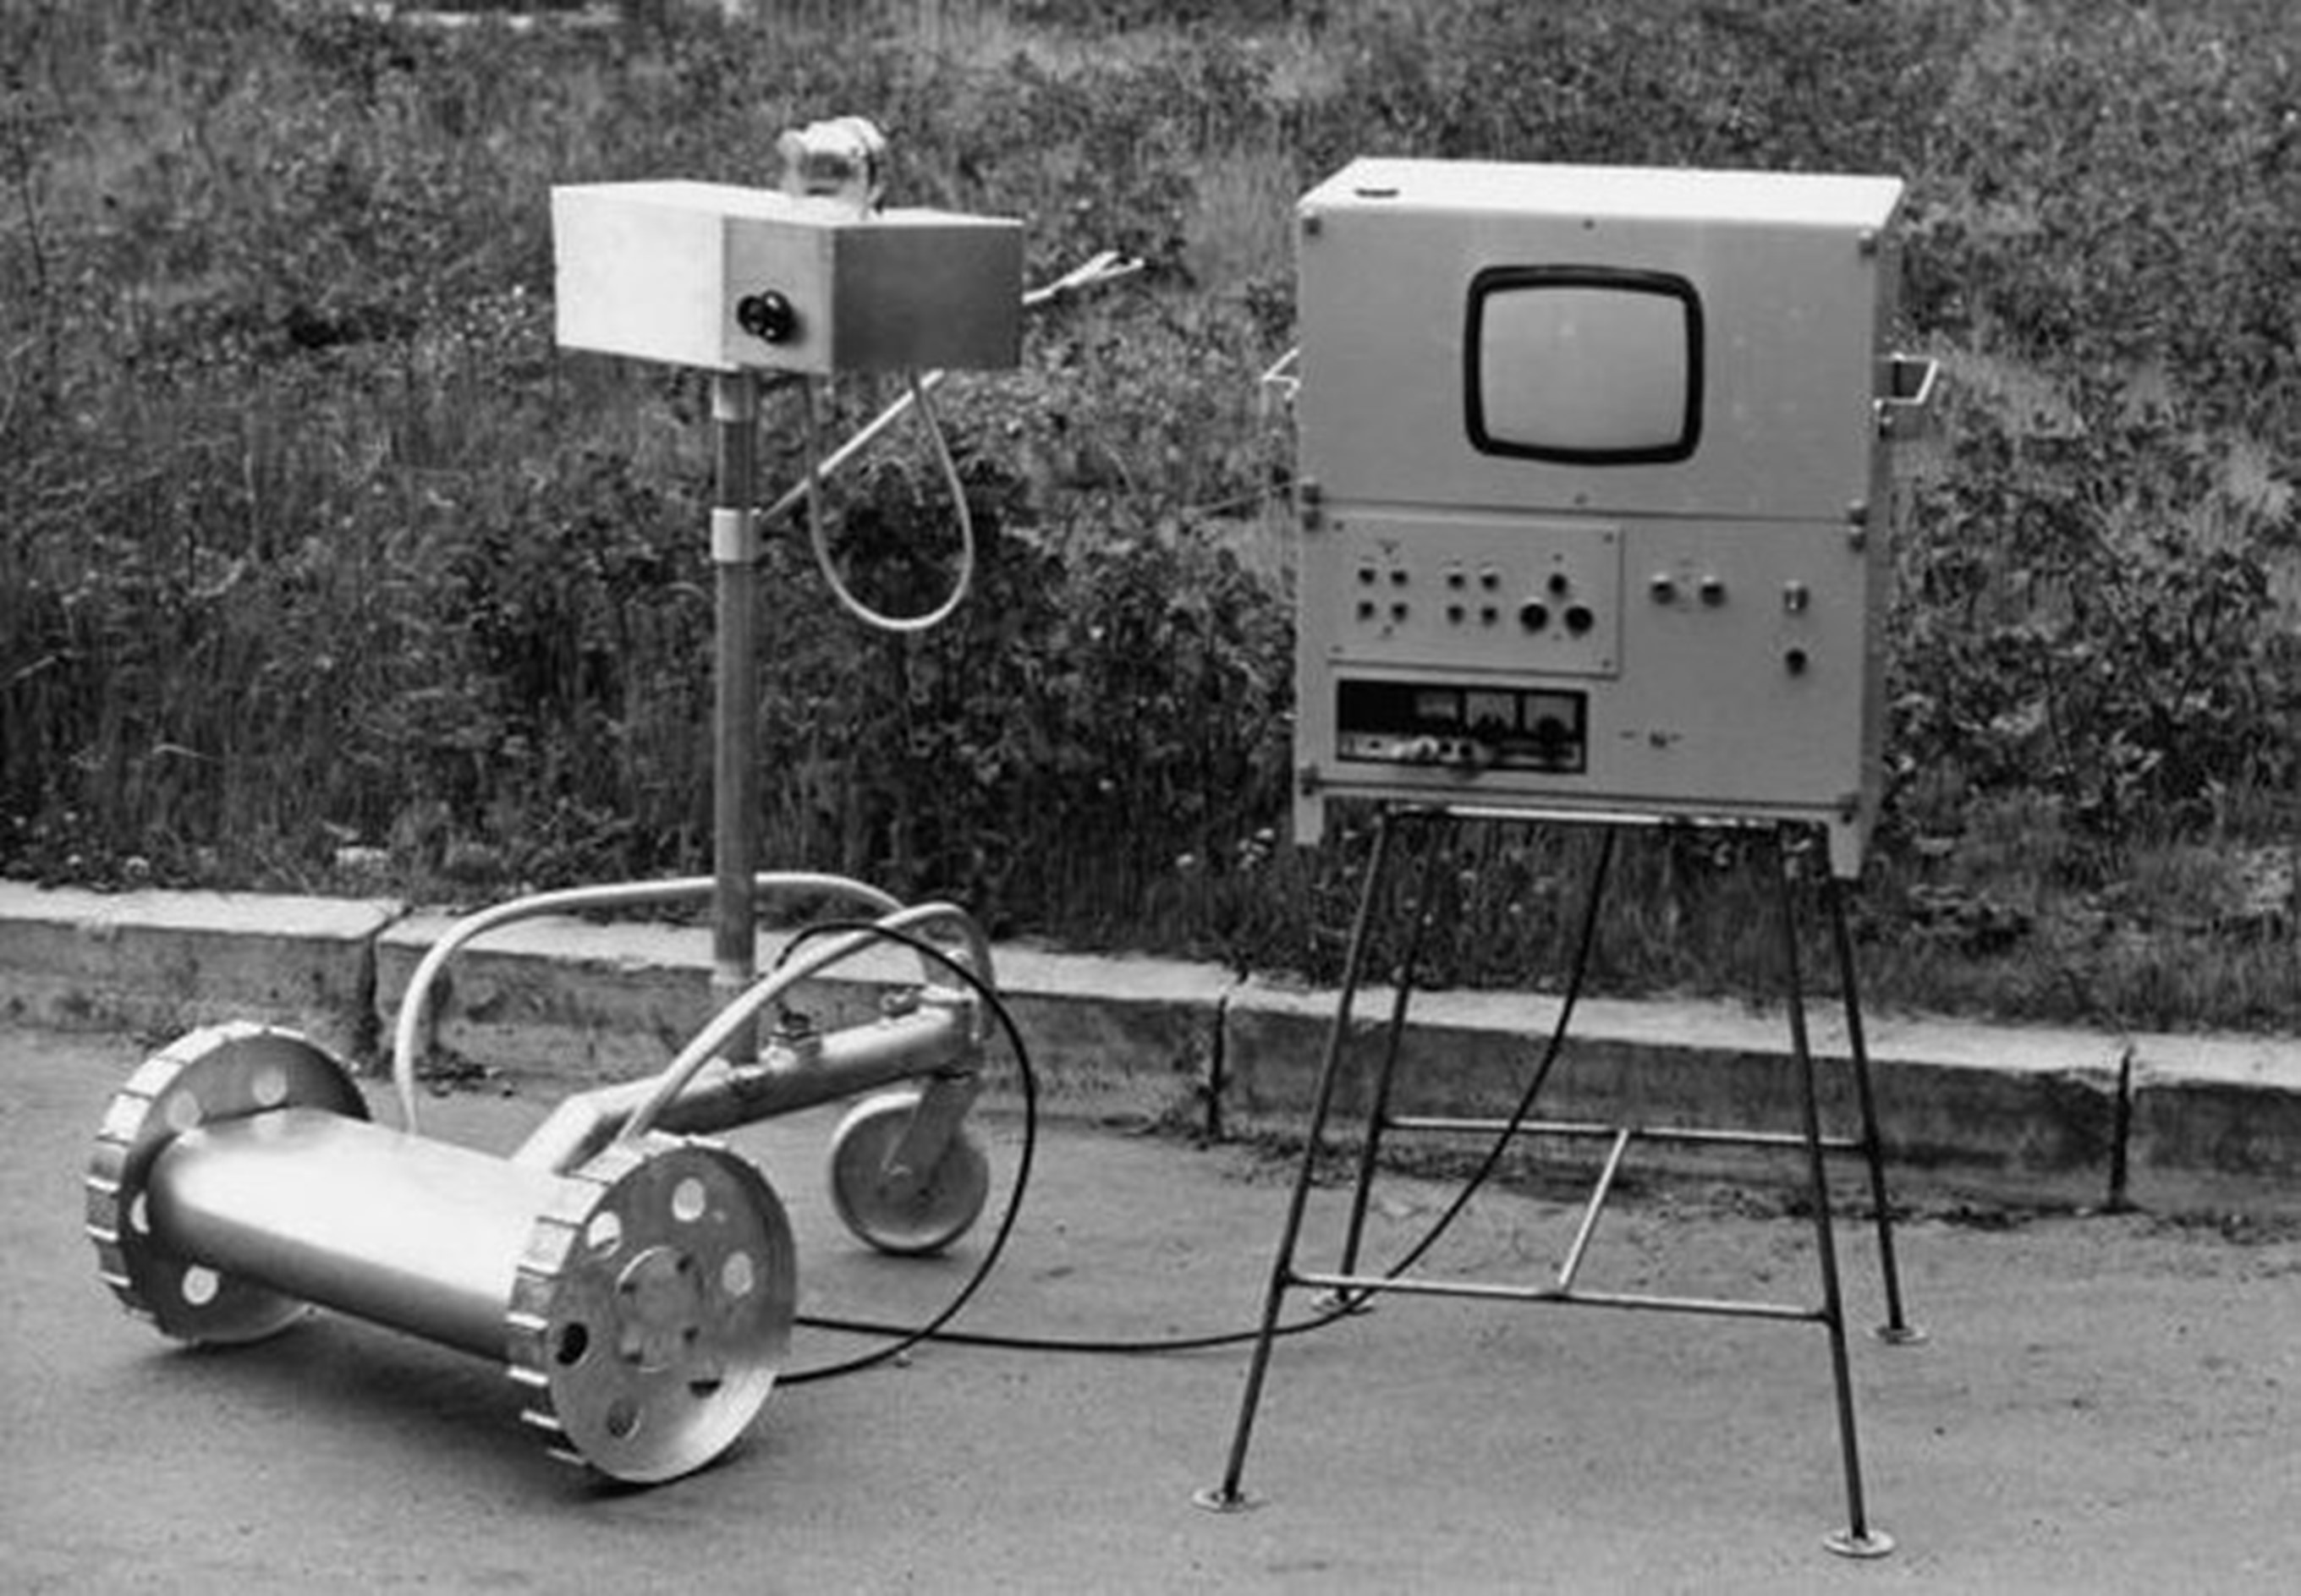 Колесный робот-разведчик, оснащенный телевизионной камерой и дозиметром для диапазона от 50 до 10000 Р/ч. Управлялся и питался по кабелю. Его дополняла аналогичная машина РР-2, которым на смену пришли модифицированные версии РР-3 и РР-4.